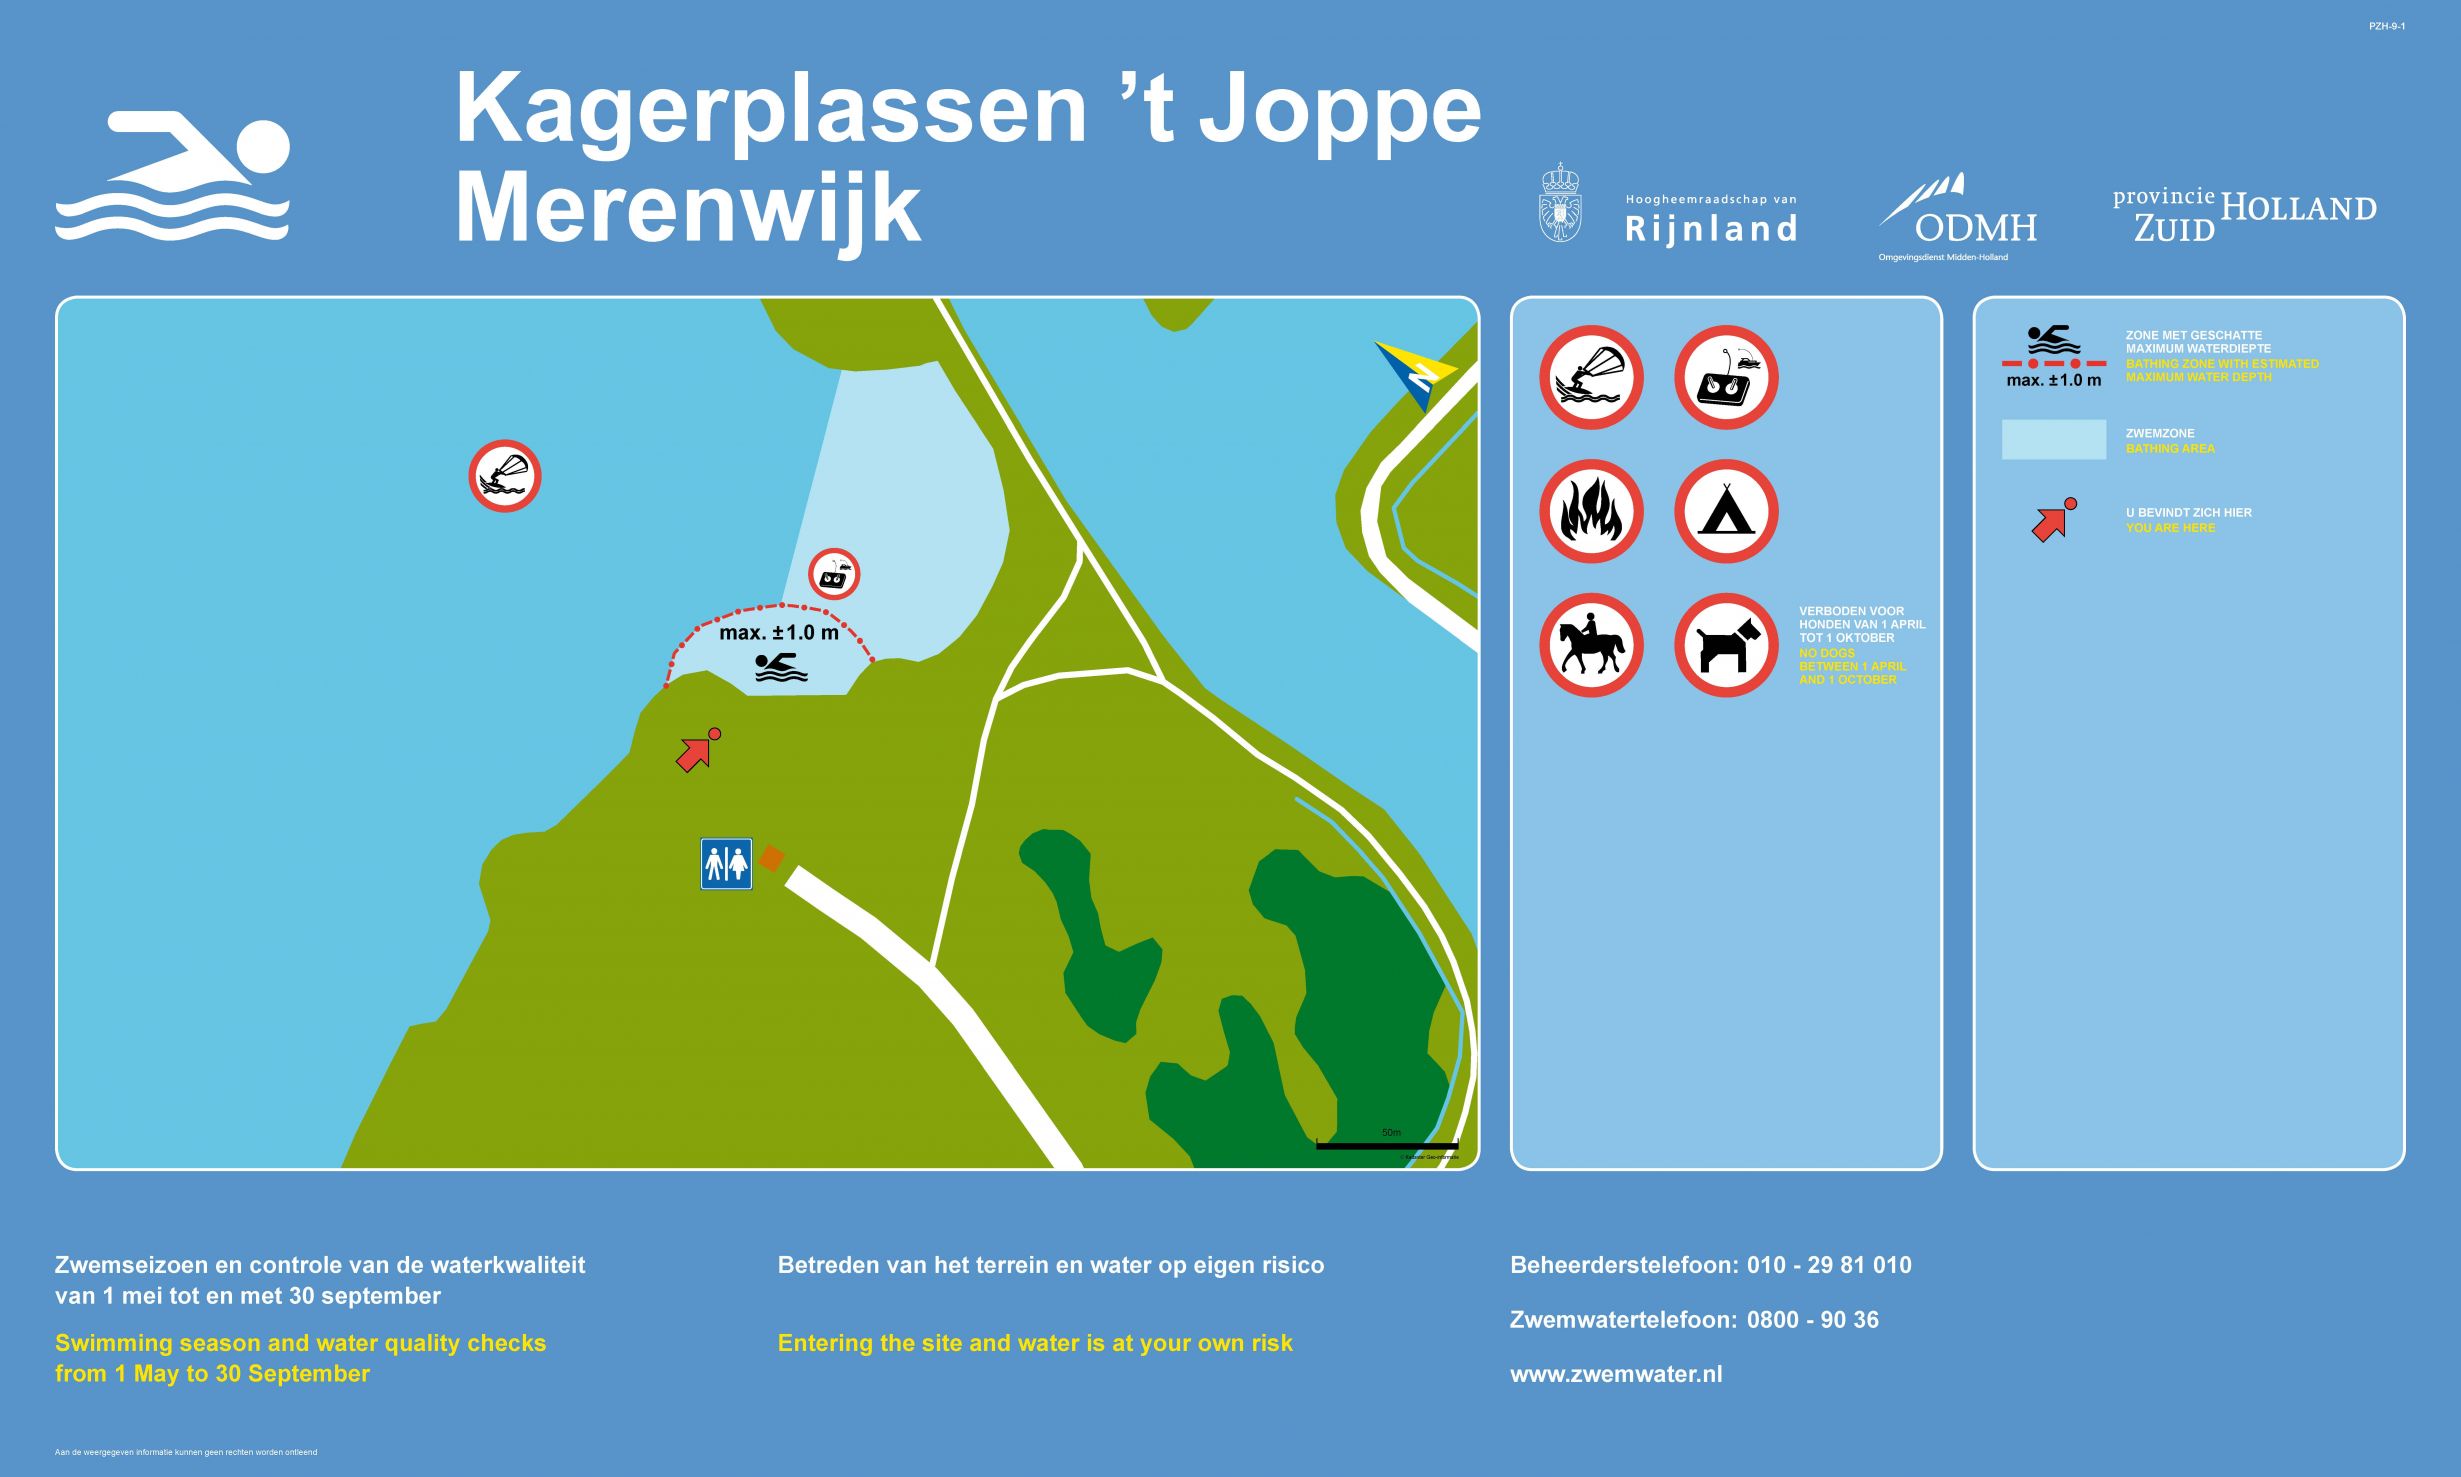 Het informatiebord bij zwemlocatie Kagerplassen 't Joppe Merenwijk